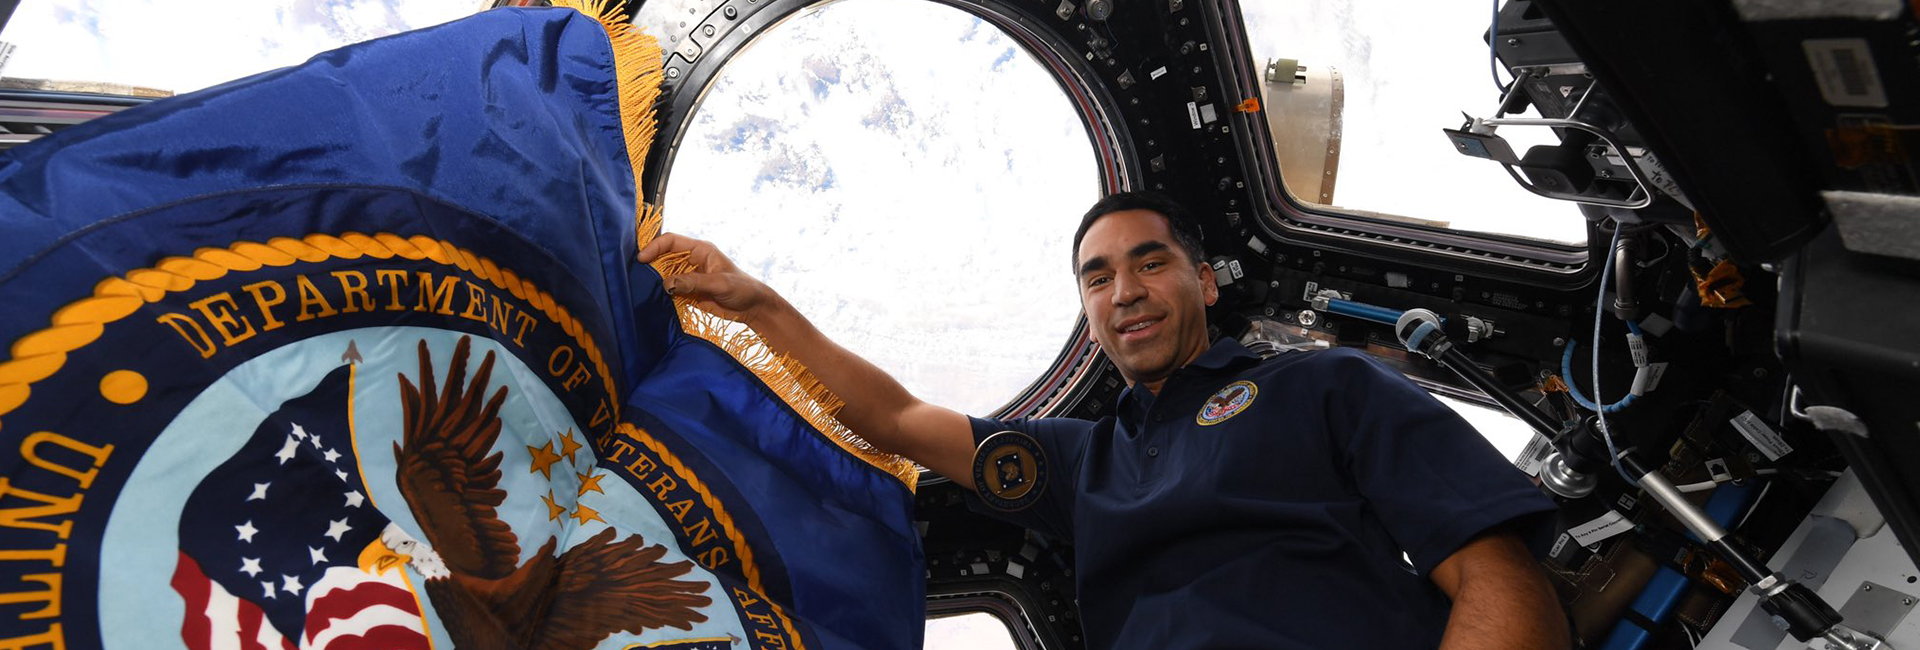 El astronauta indio estadounidense de la NASA, Raja Chari, compartió una imagen de sí mismo atracado en la Estación Espacial Internacional, hace un año. El astronauta se está preparando para la misión lunar de la NASA, Artemis.